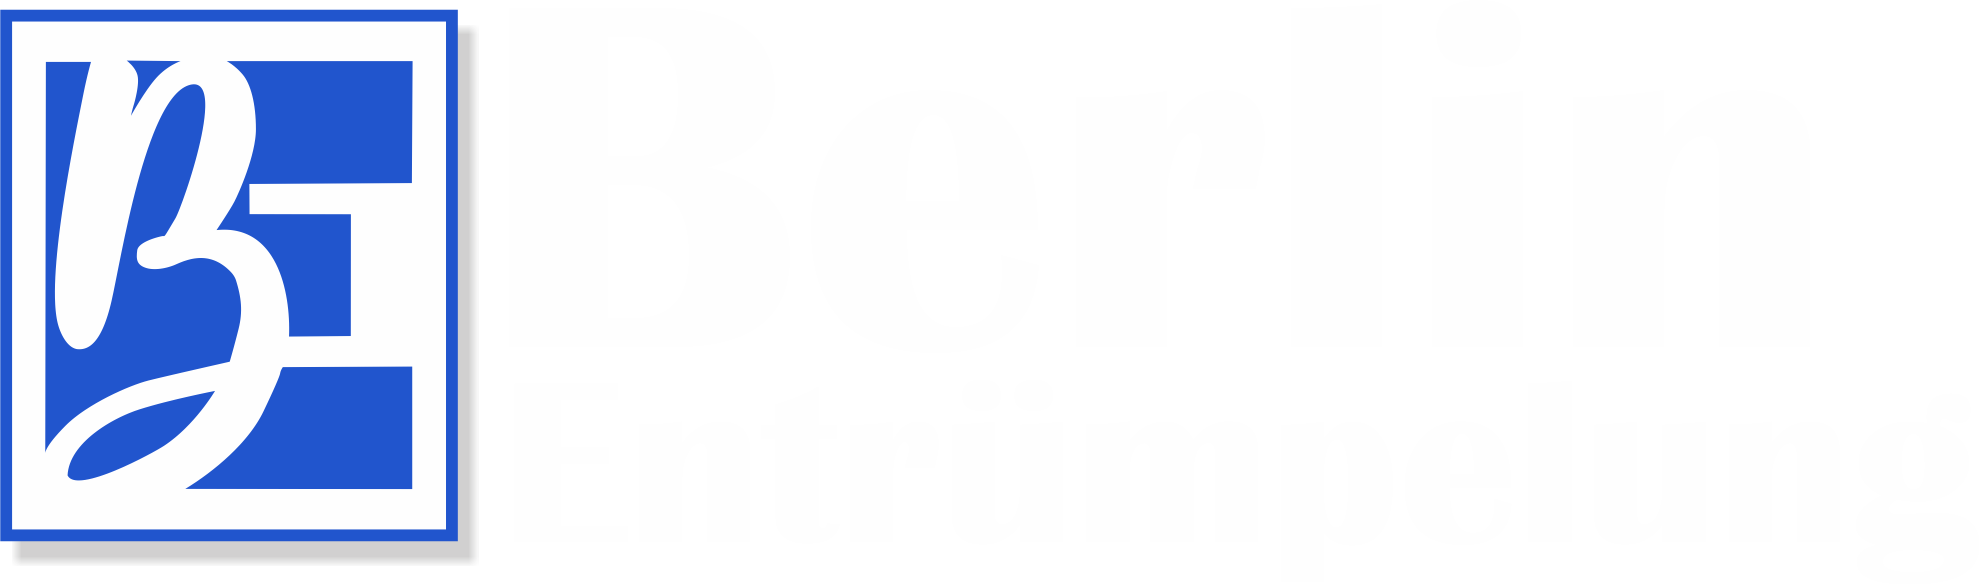 berlin entrümpelung logo white